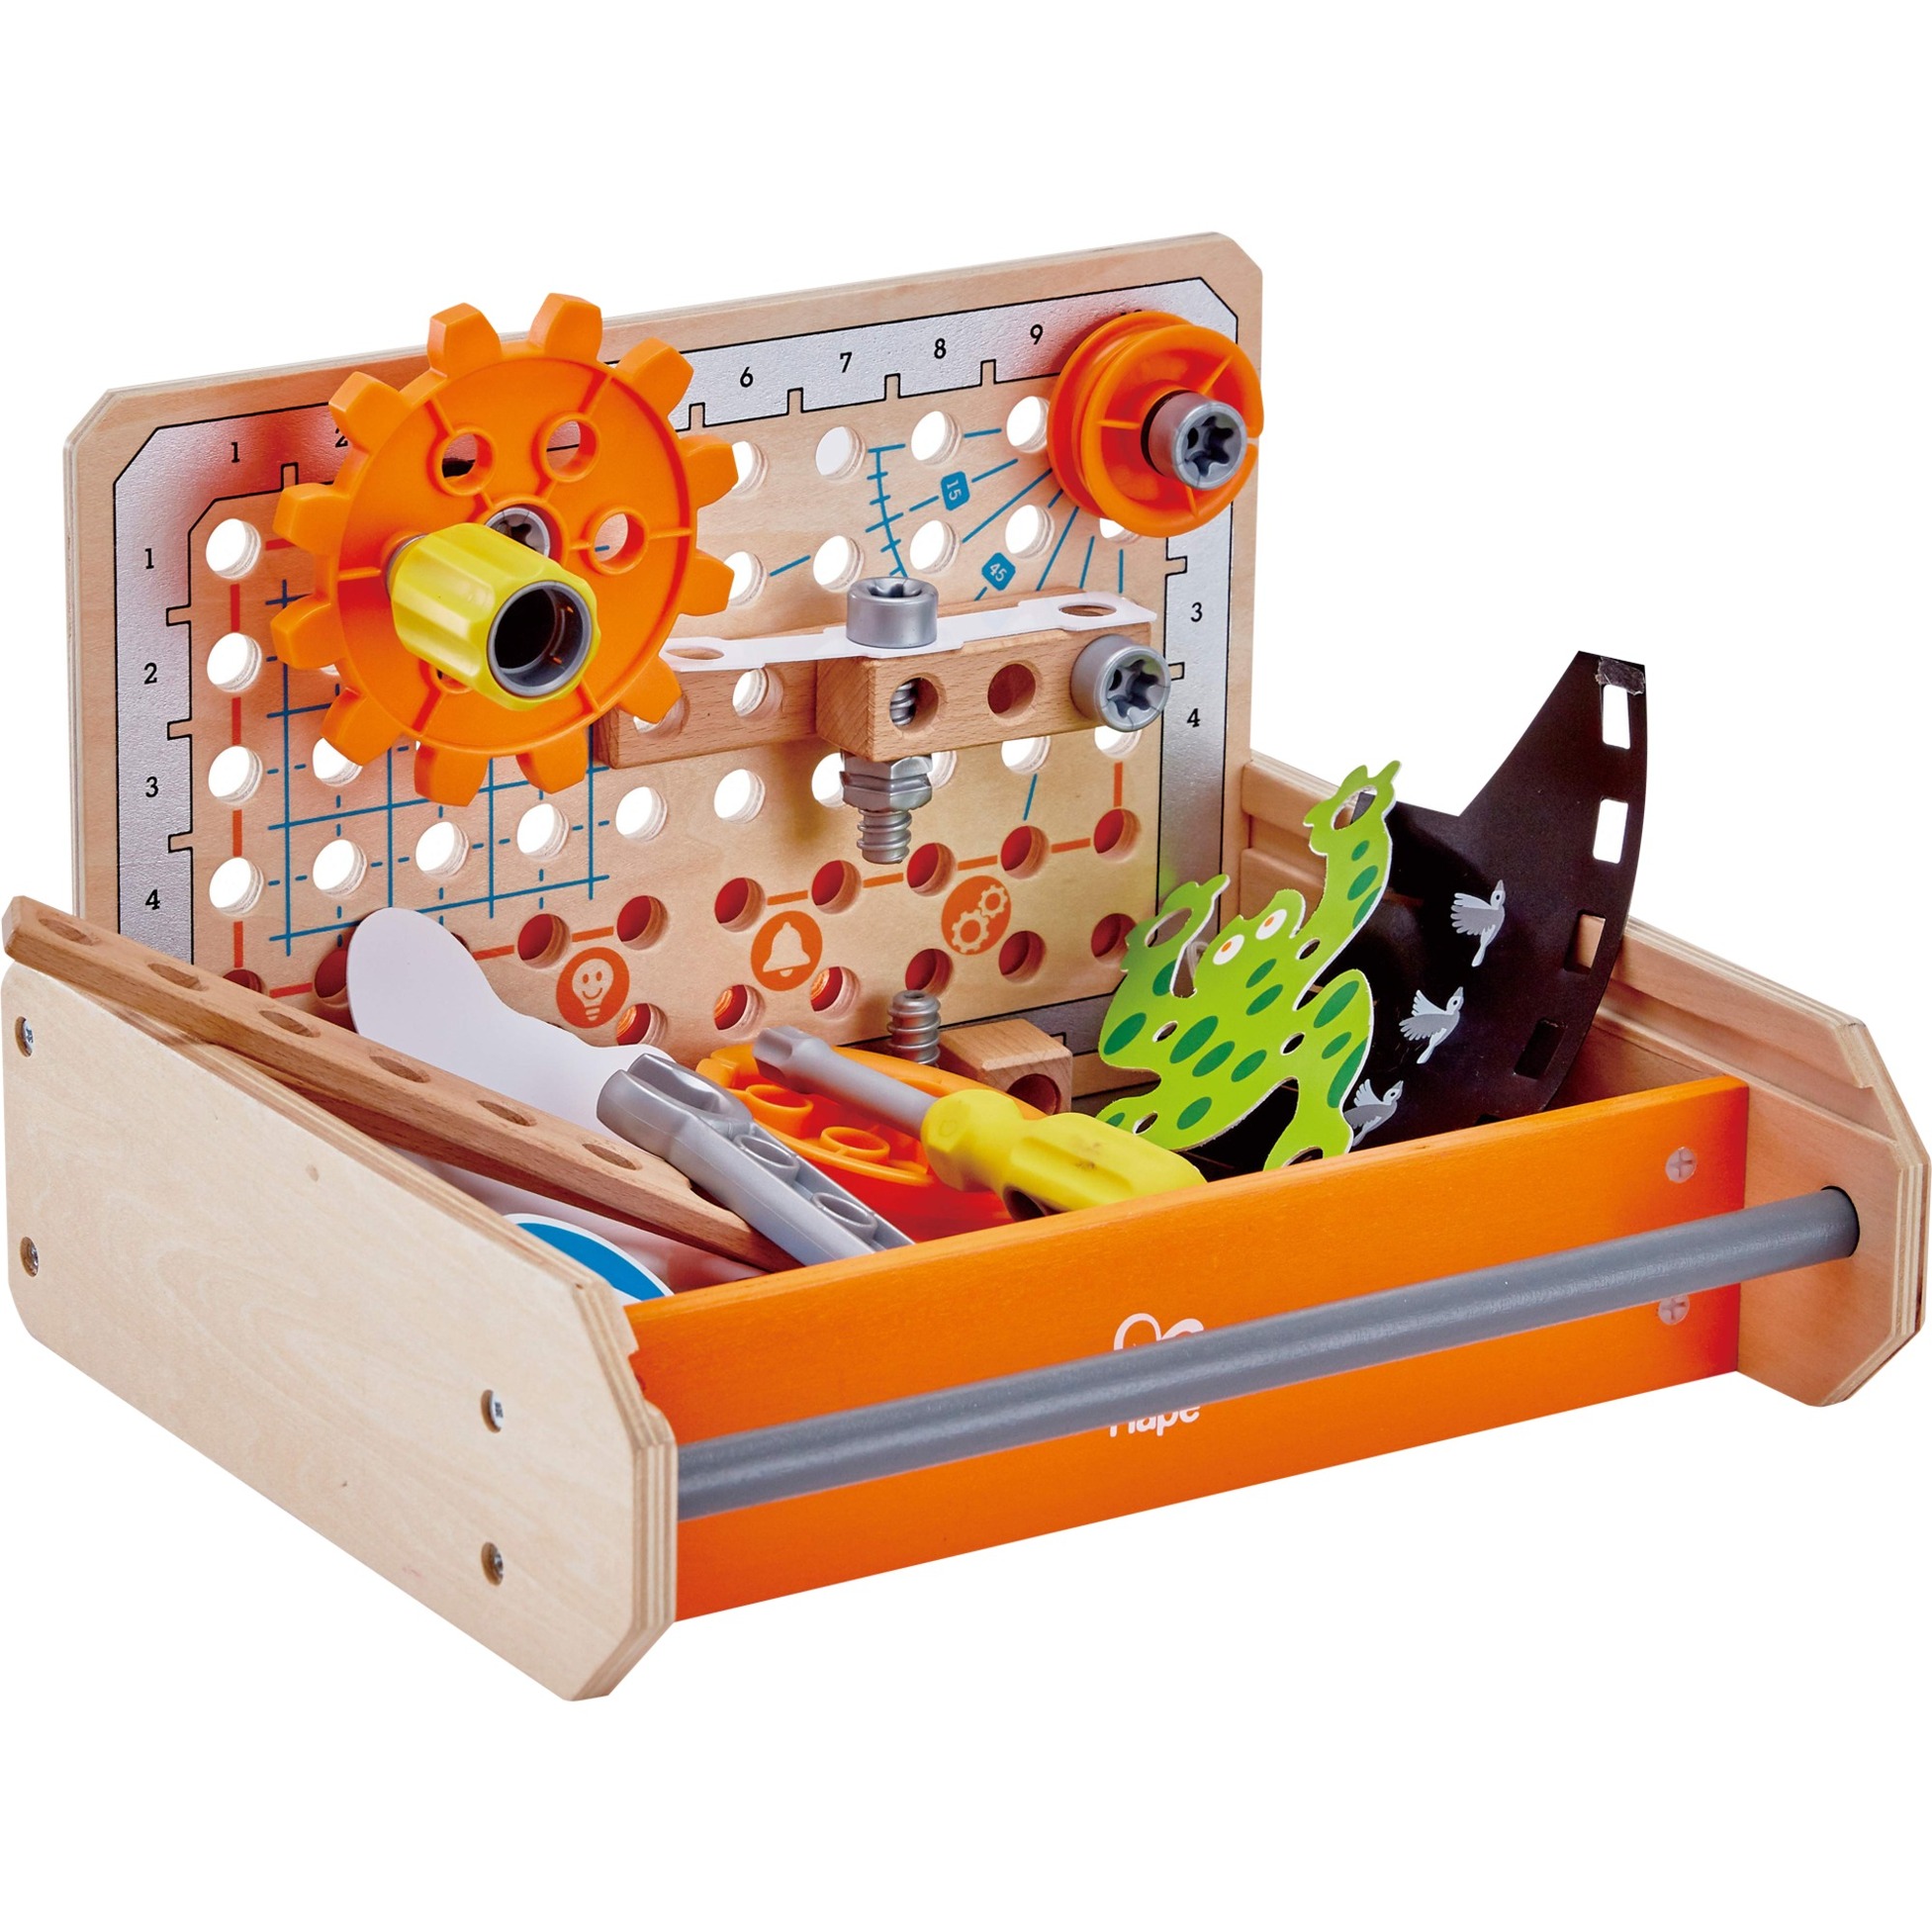 Image of Alternate - Tüftler Werkzeugkasten, Kinderwerkzeug online einkaufen bei Alternate